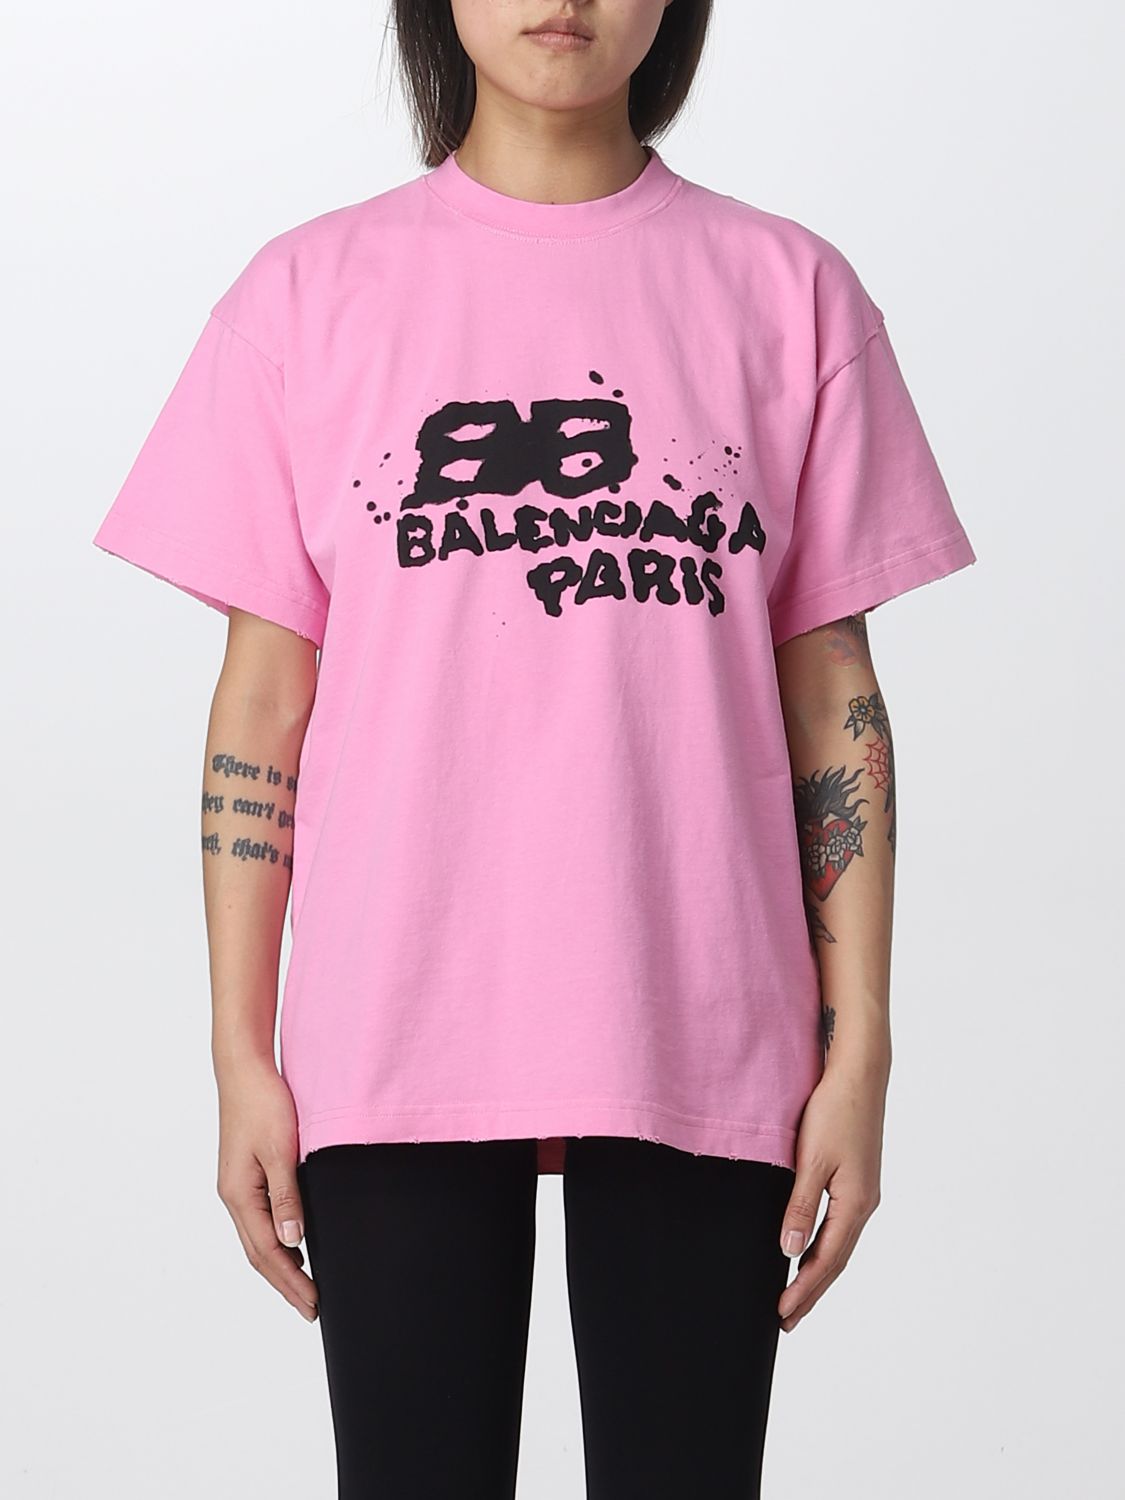 BALENCIAGA Paris T-Shirt